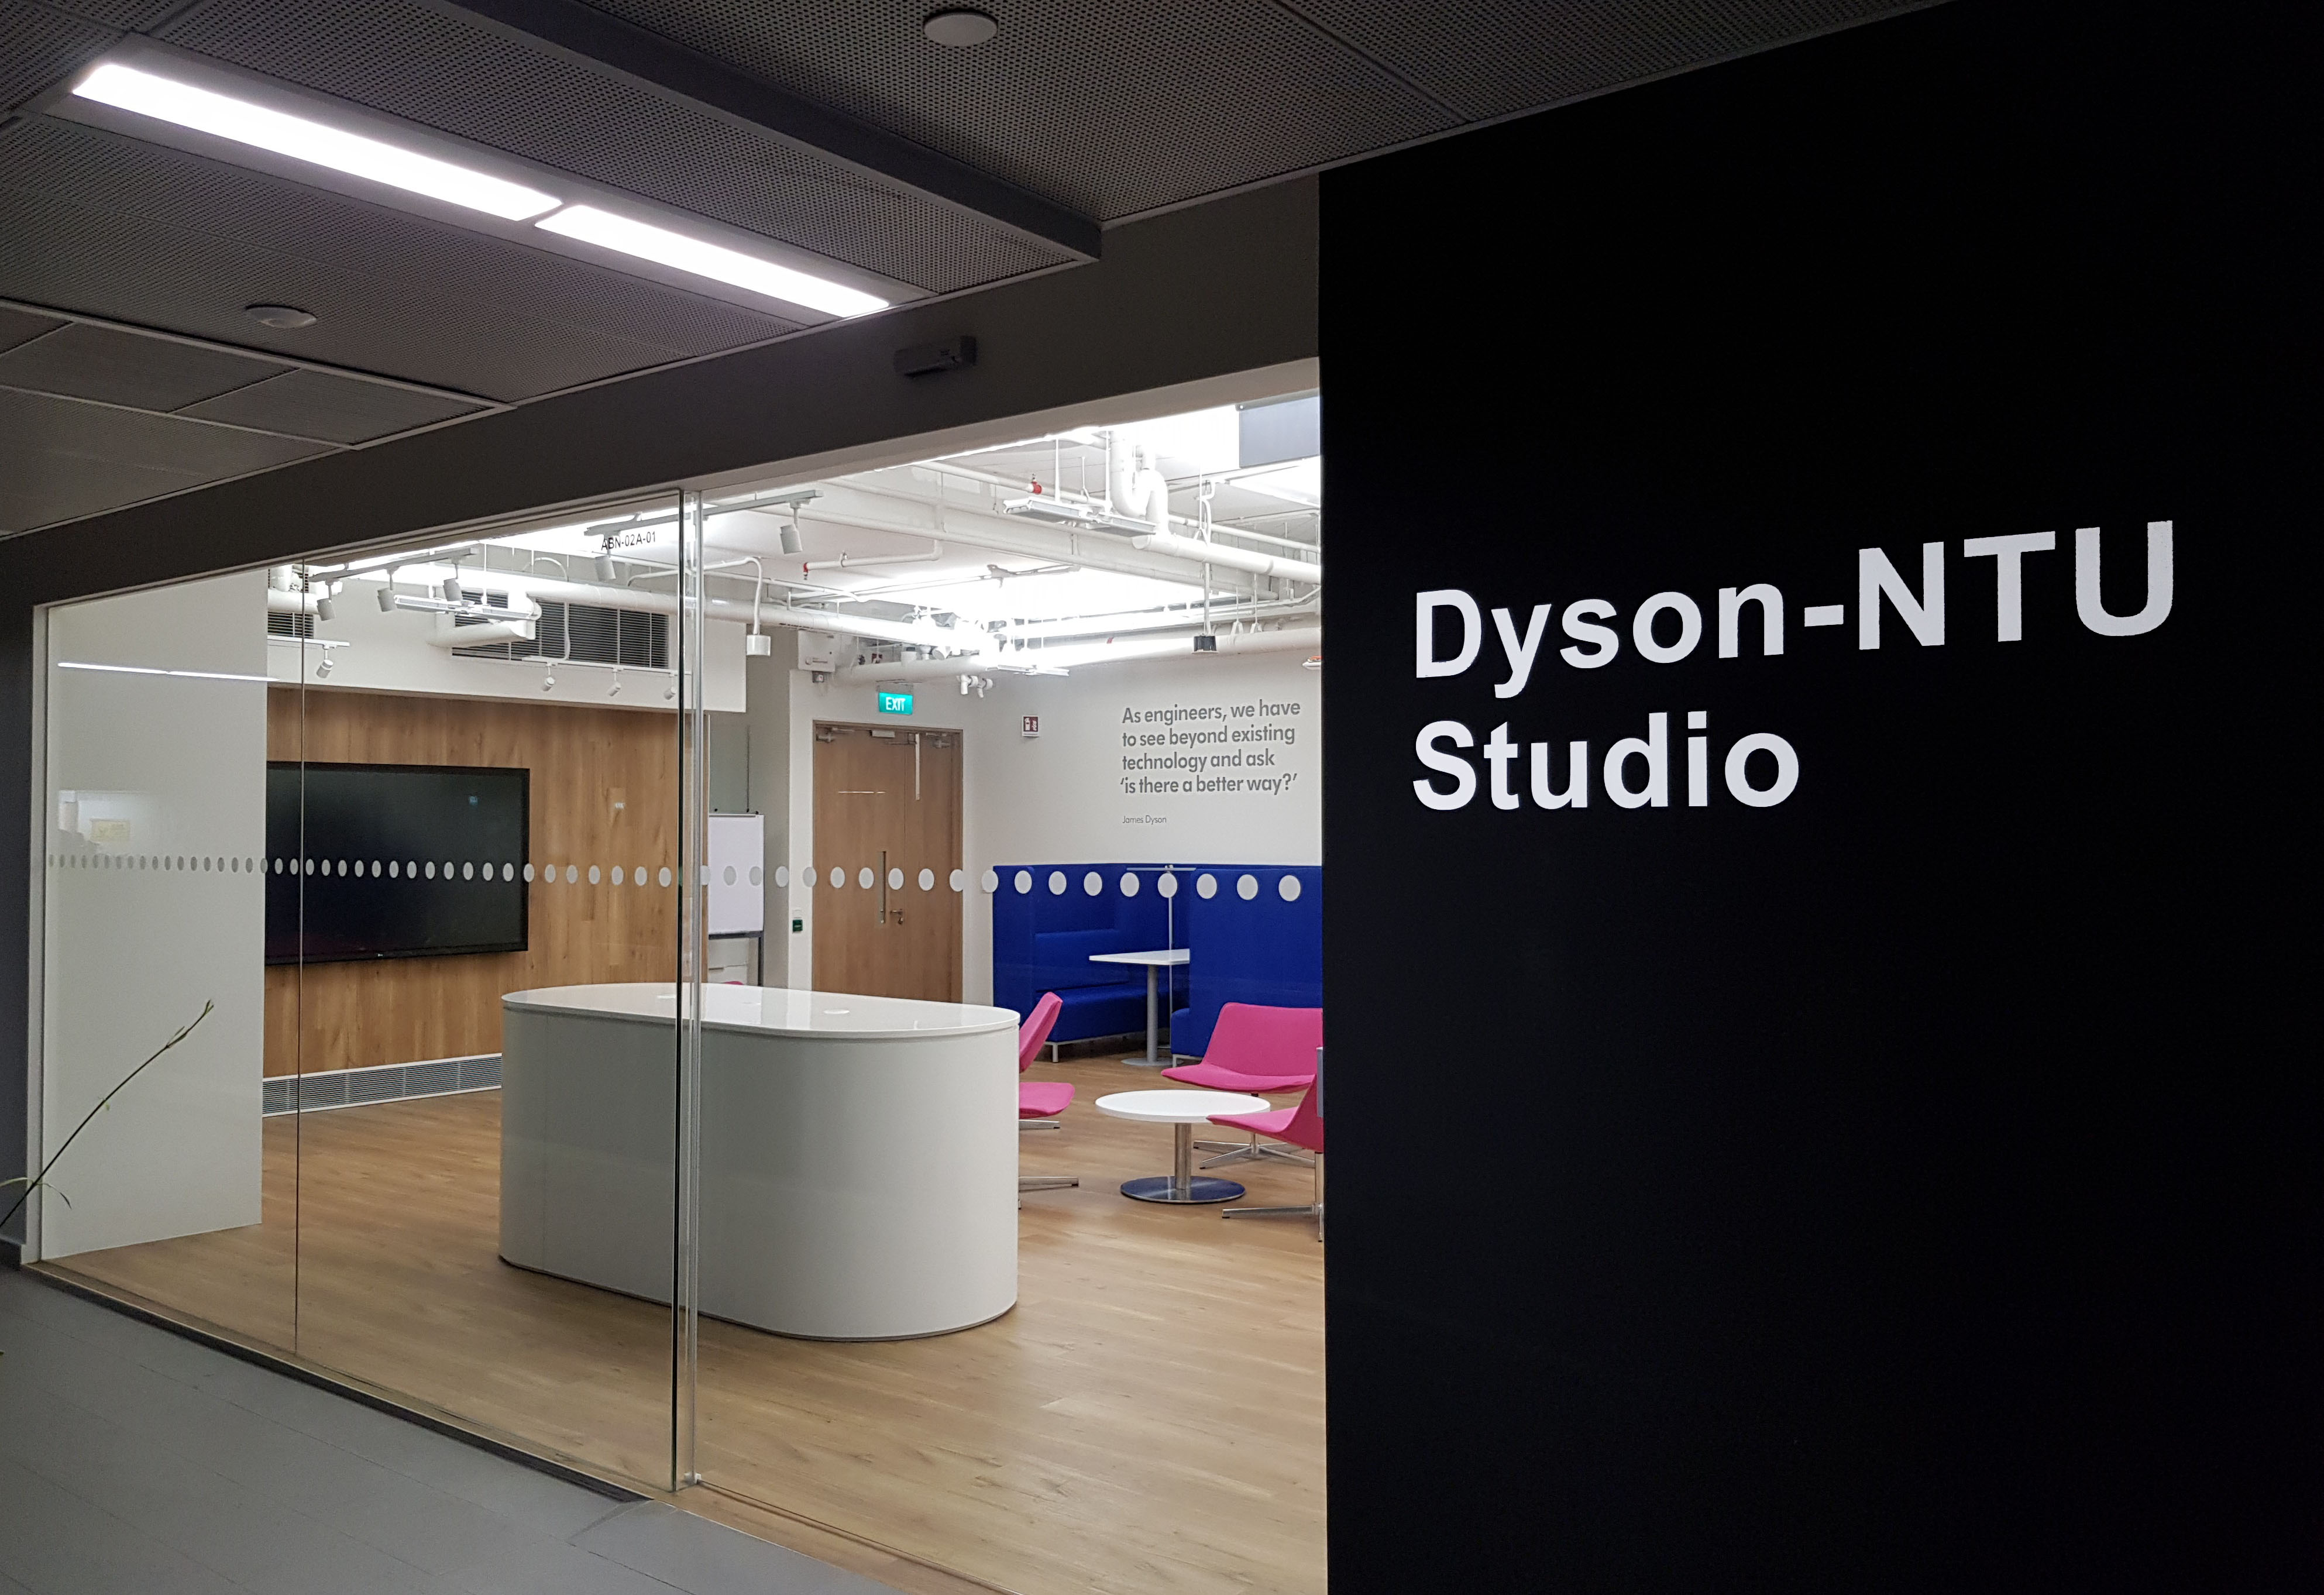 Visit Dyson-NTU Studio